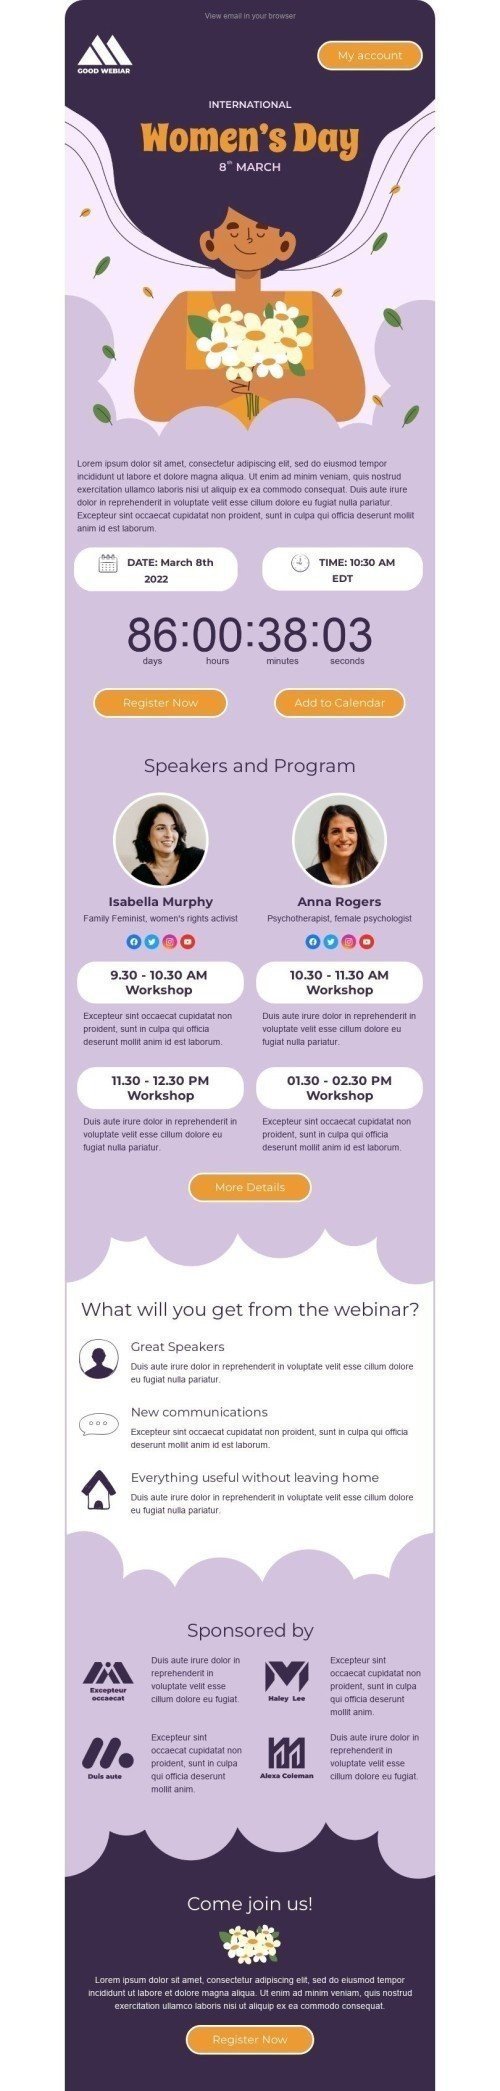 Plantilla de correo electrónico «Seminario web para mujeres» de Día de la Mujer para la industria de Seminarios en línea Vista de escritorio